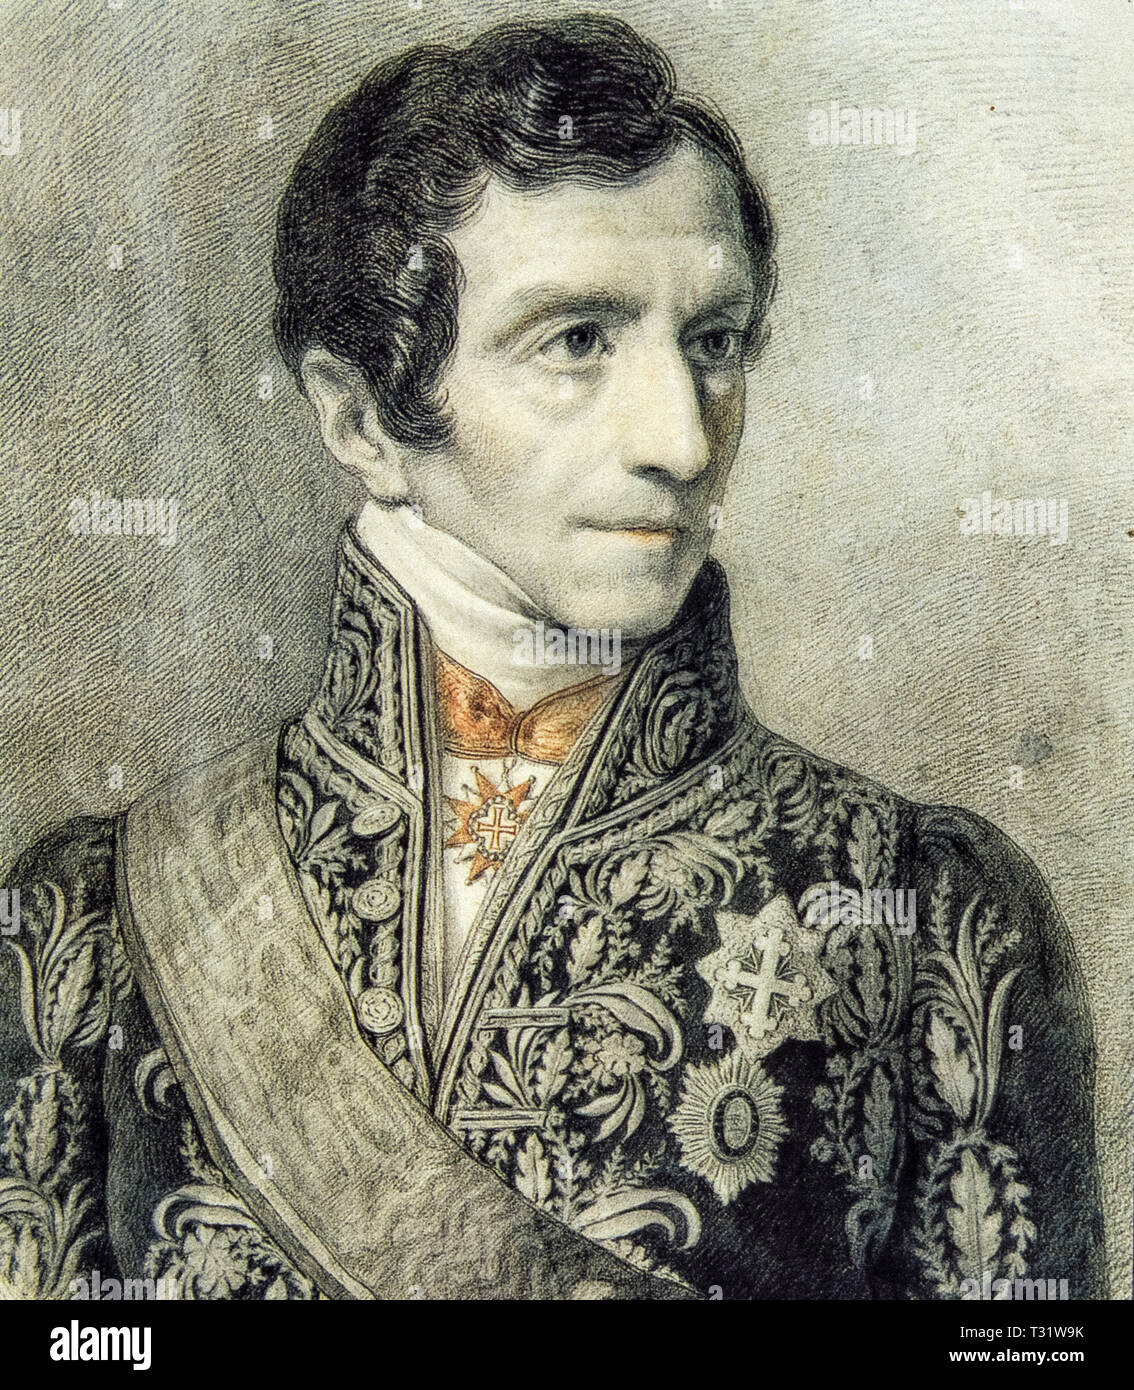 Luigi Giuseppe Barbaroux connu sous le nom de Giuseppe Barbaroux (Cuneo, 6 décembre 1772 - Turin, 11 mai 1843) était un avocat, juriste, avocat général au Sénat de Gênes en 1815, puis ambassadeur à Rome de 1816 à 1824 Banque D'Images